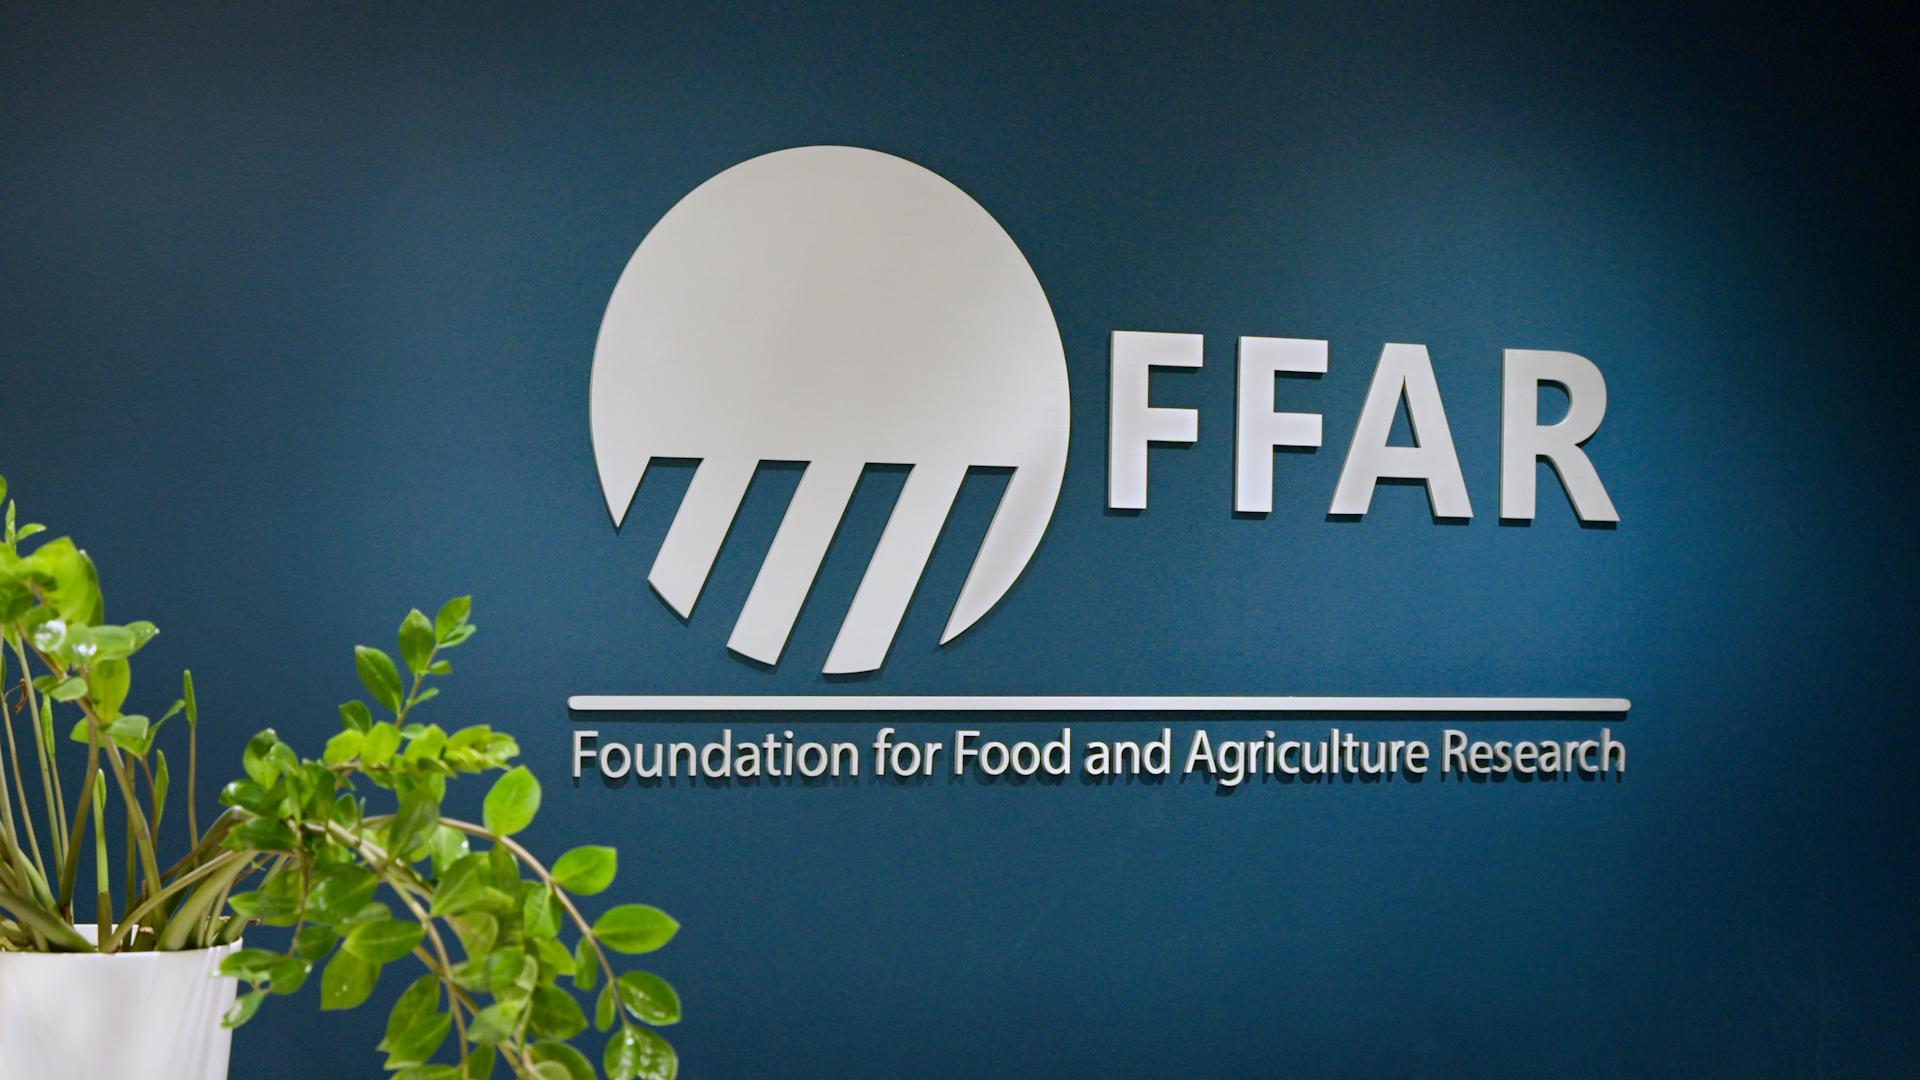 FFAR logo